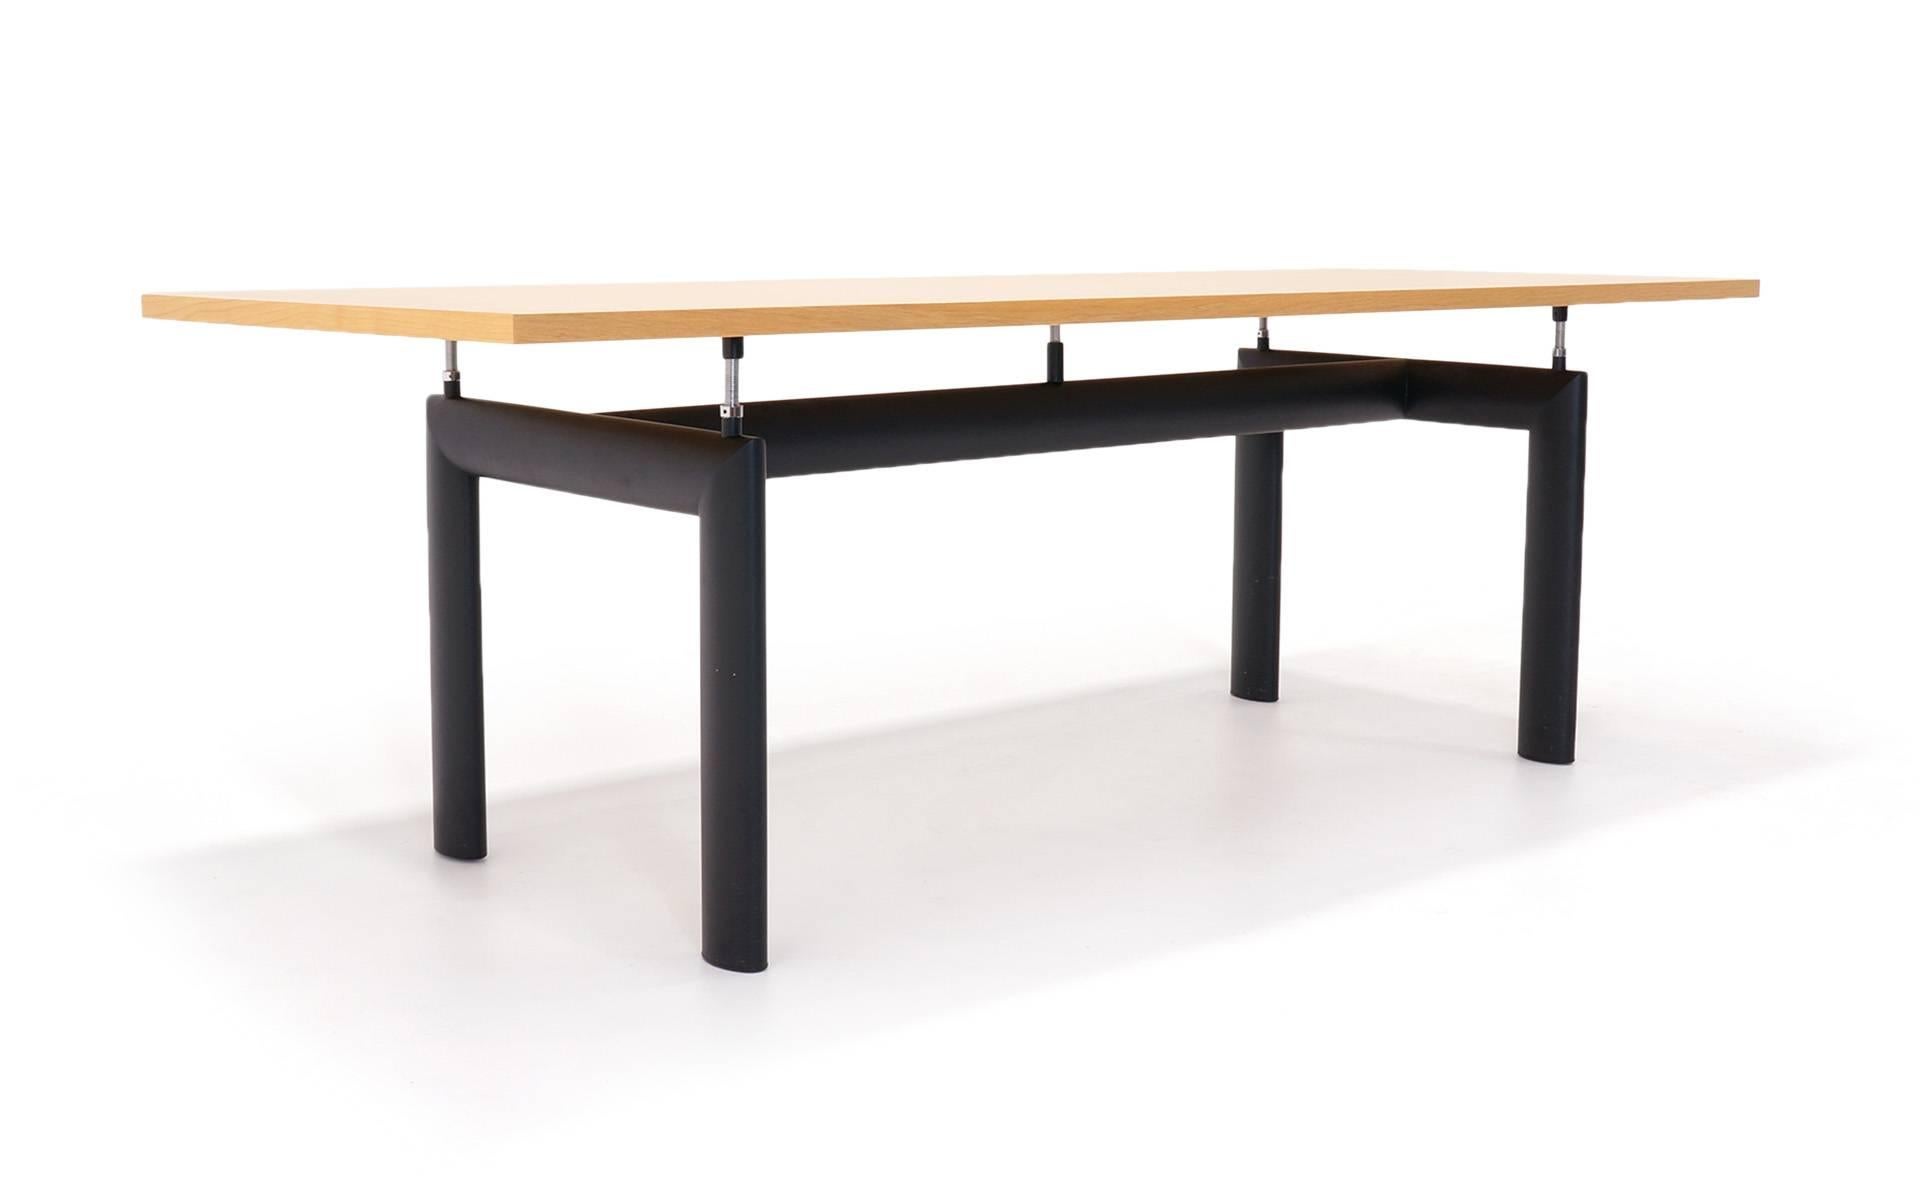 Schöner Esstisch Le Corbusier LC6. Dies wäre auch ein großartiger Schreibtisch oder Konferenztisch. Der Zustand ist ausgezeichnet.